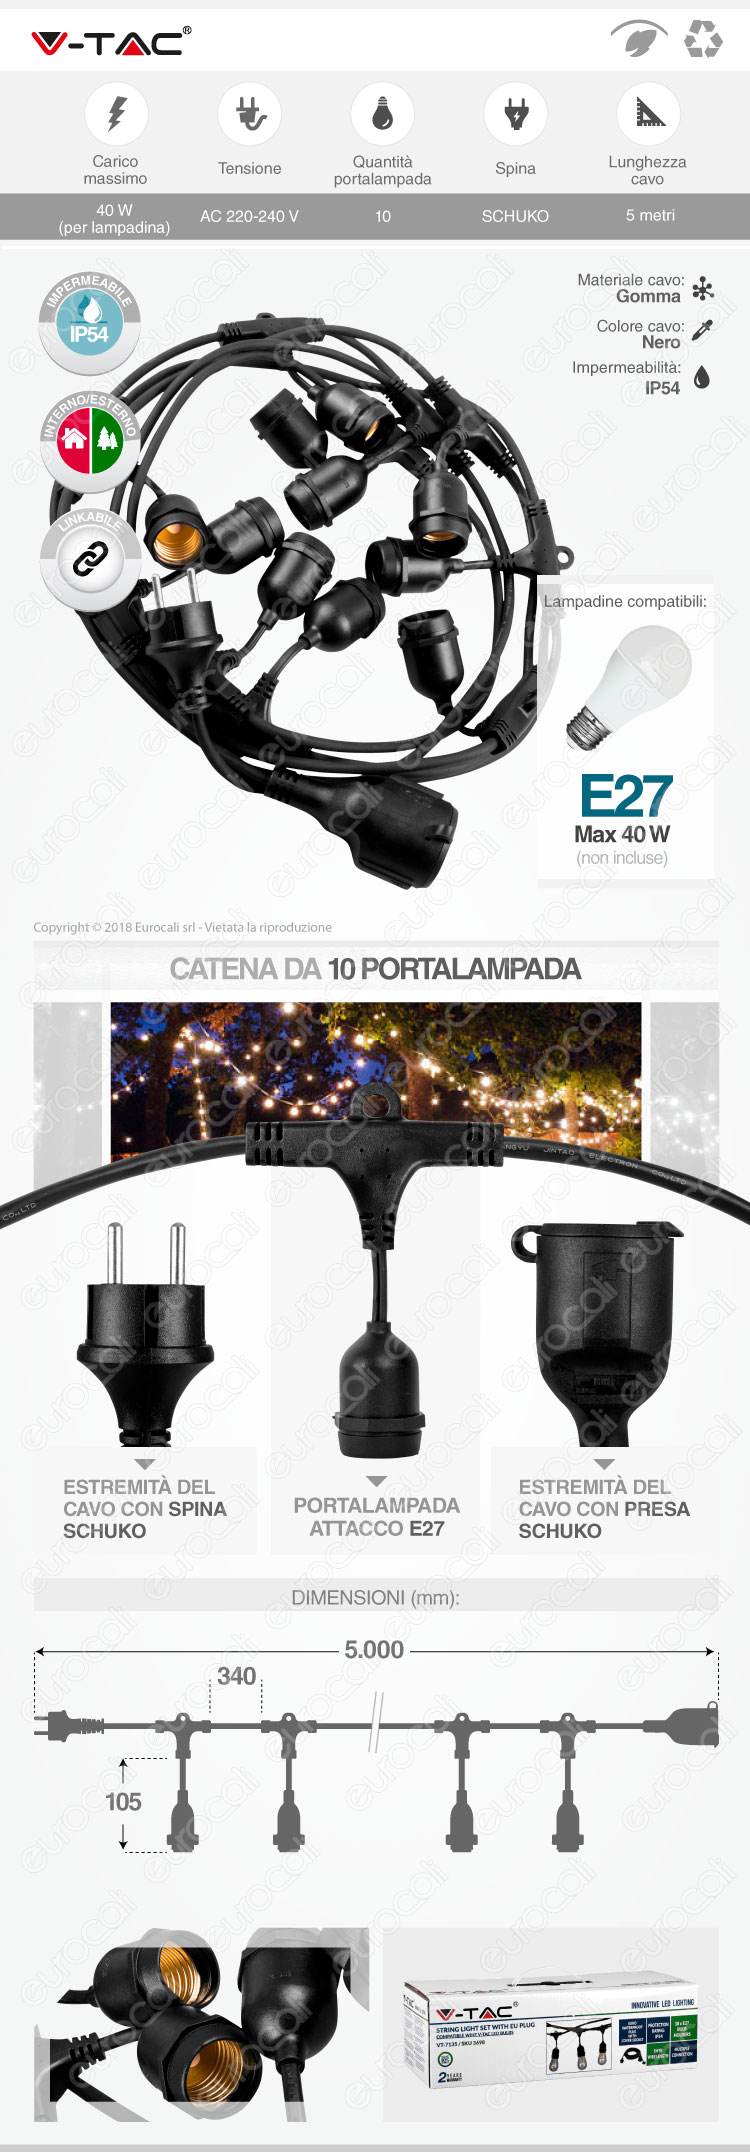 V-Tac Catenaria per Lampadine LED E27